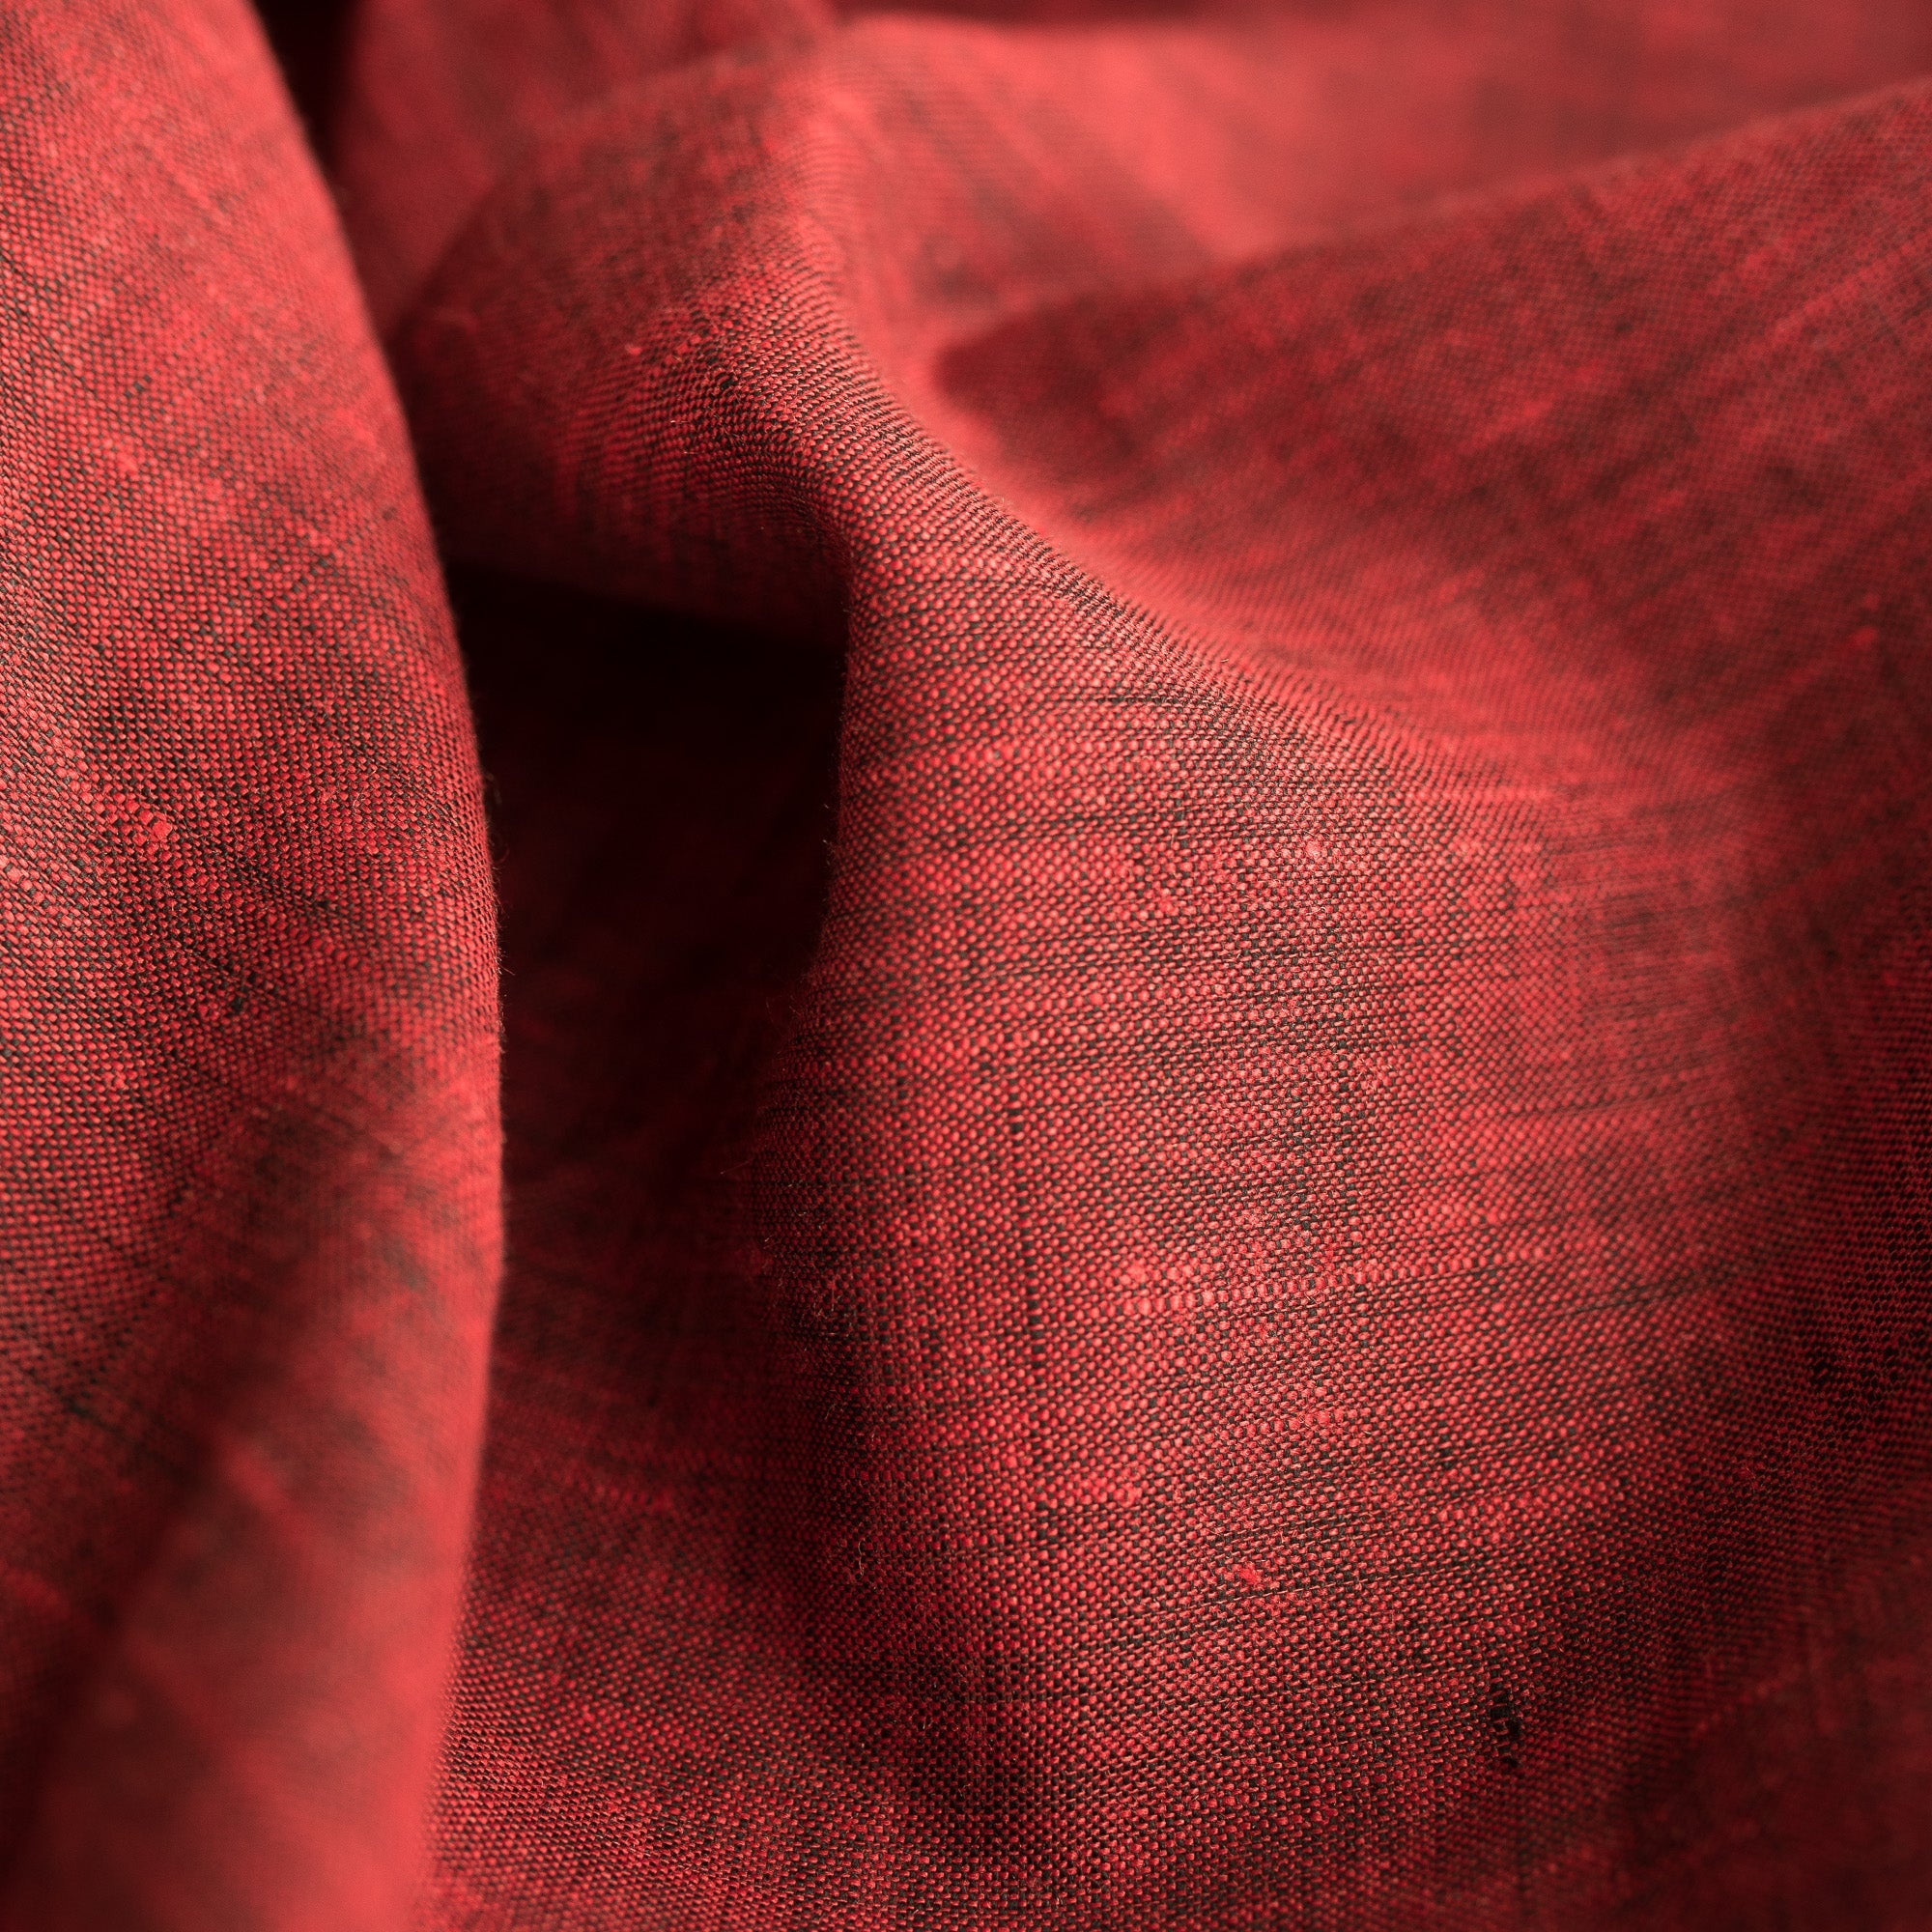 Red Velvet Two Tone 100% Linen Fabric